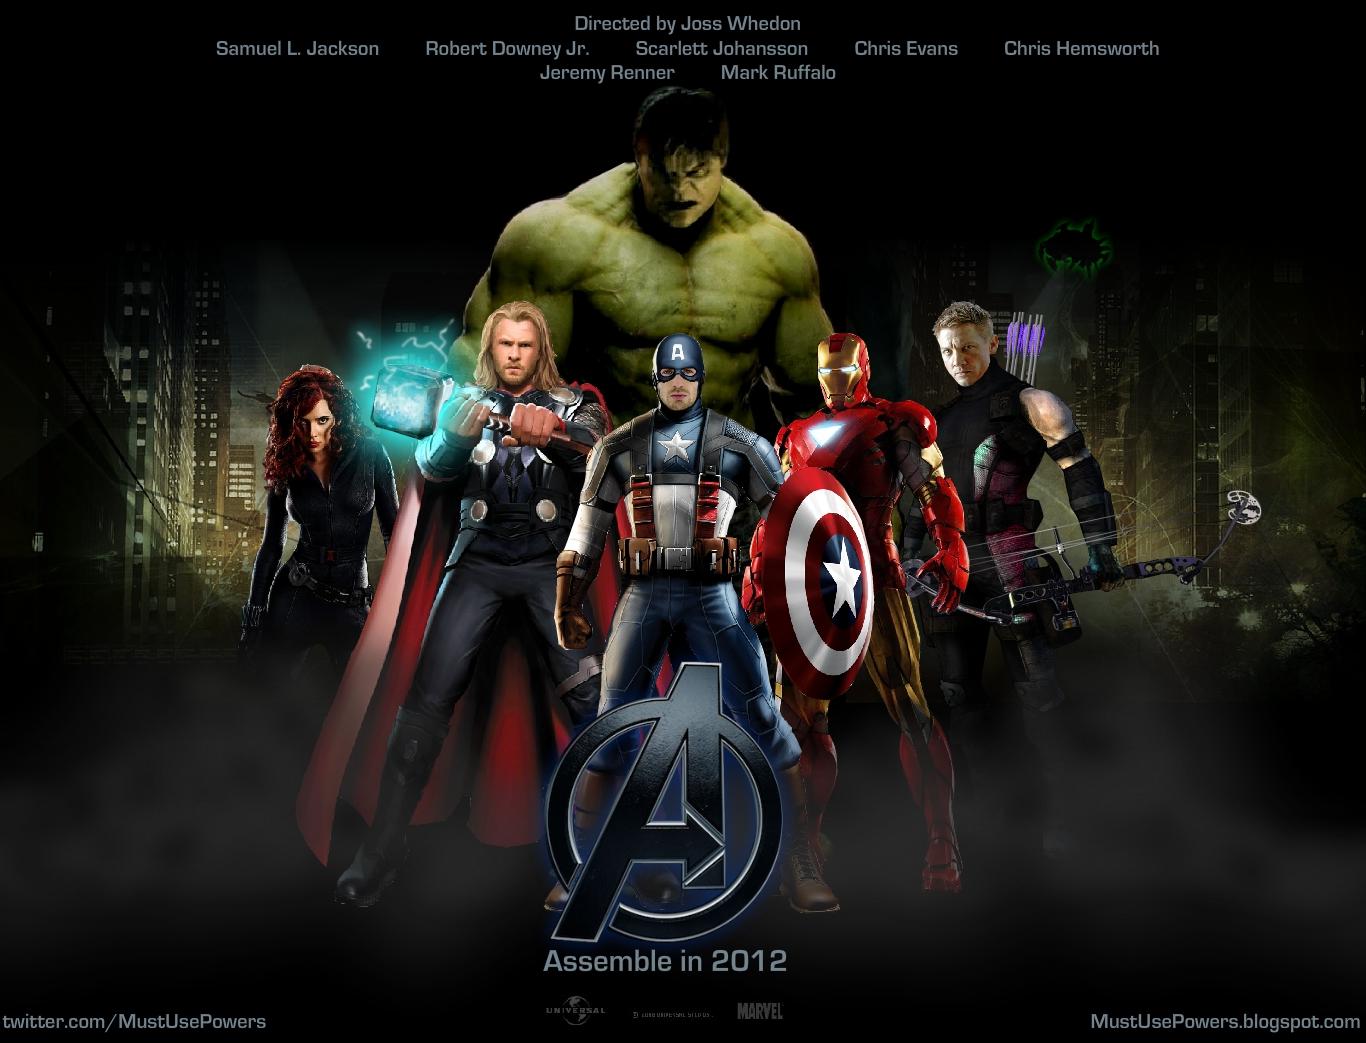 http://3.bp.blogspot.com/-SObHH-vNFiI/T8HvAAB7ZUI/AAAAAAAAEfs/4QXmwqYNO60/s1600/The-Avengers-movies-review-2012-wallpaper.jpg